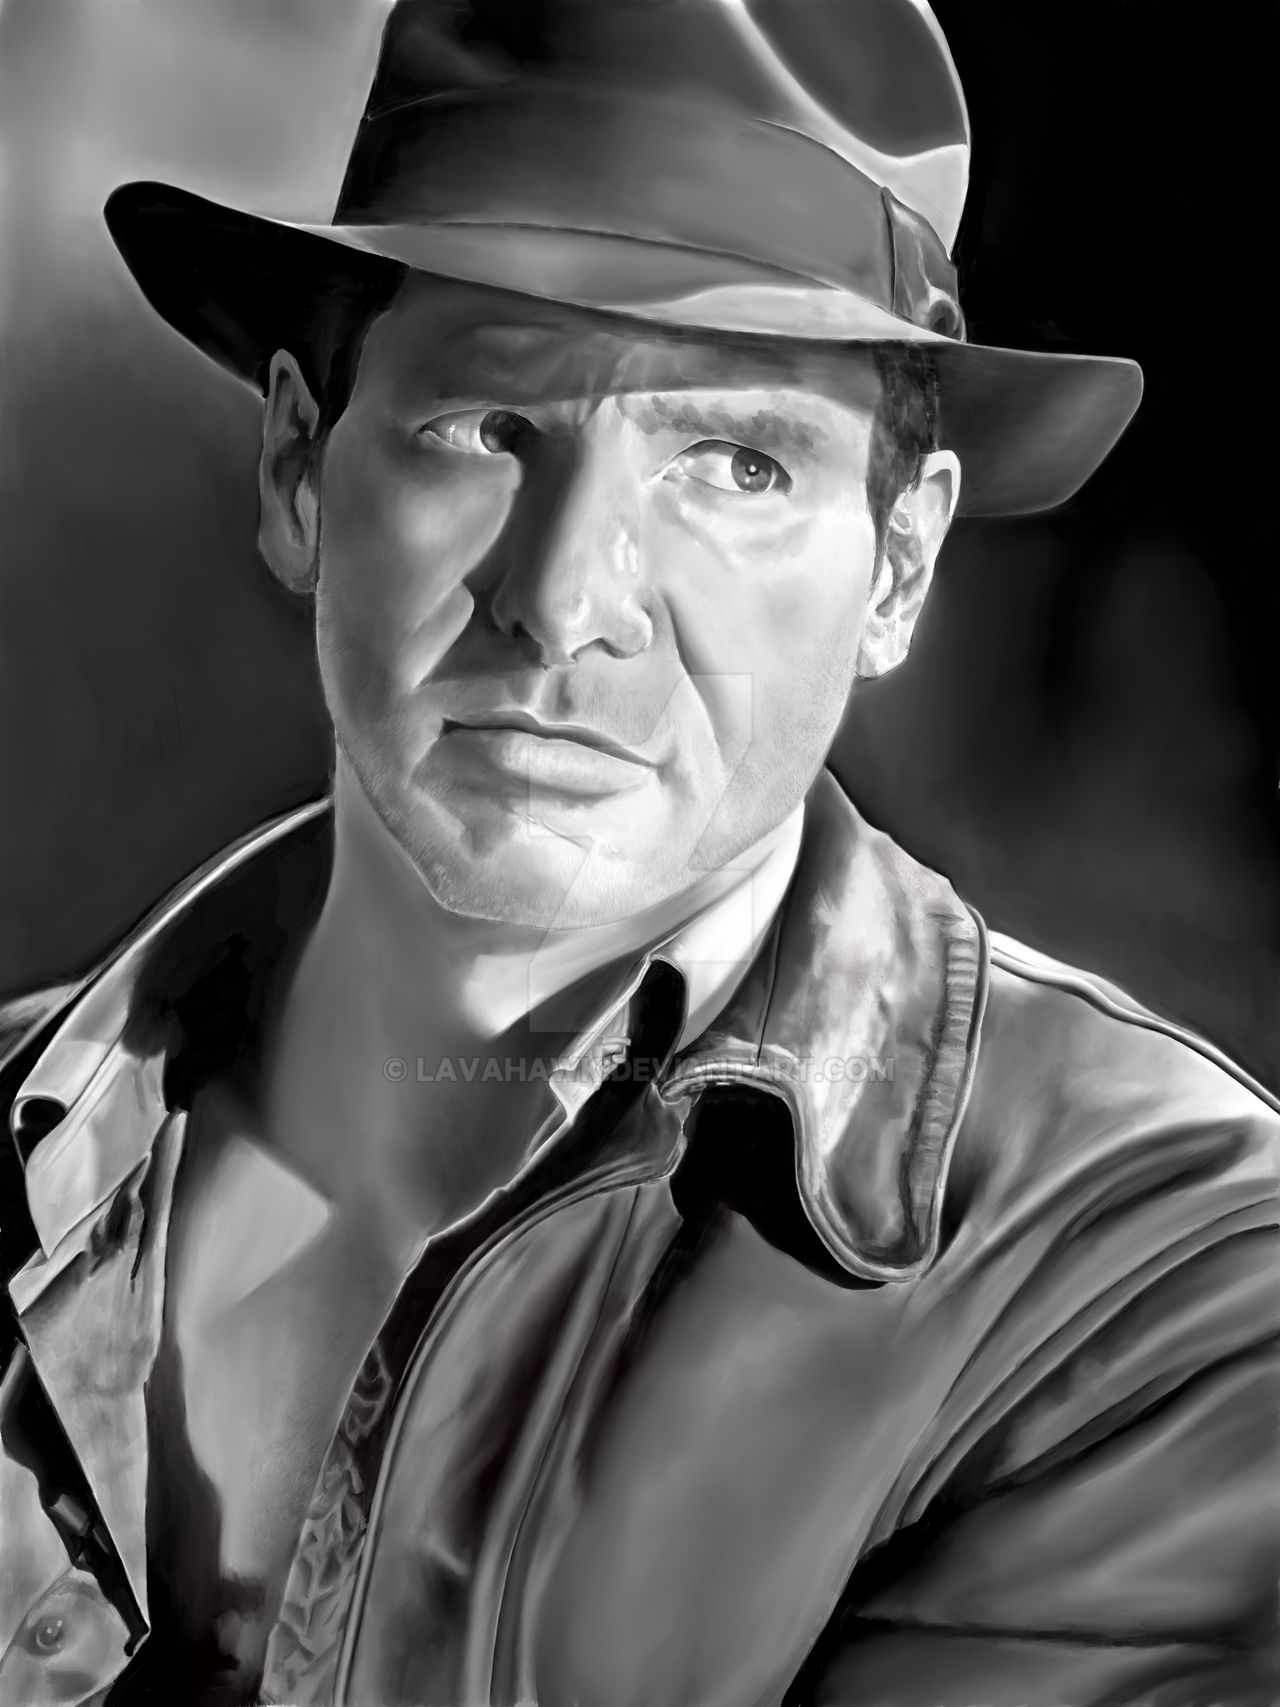 Indiana Jones 2023 by CaptainJones82 on DeviantArt